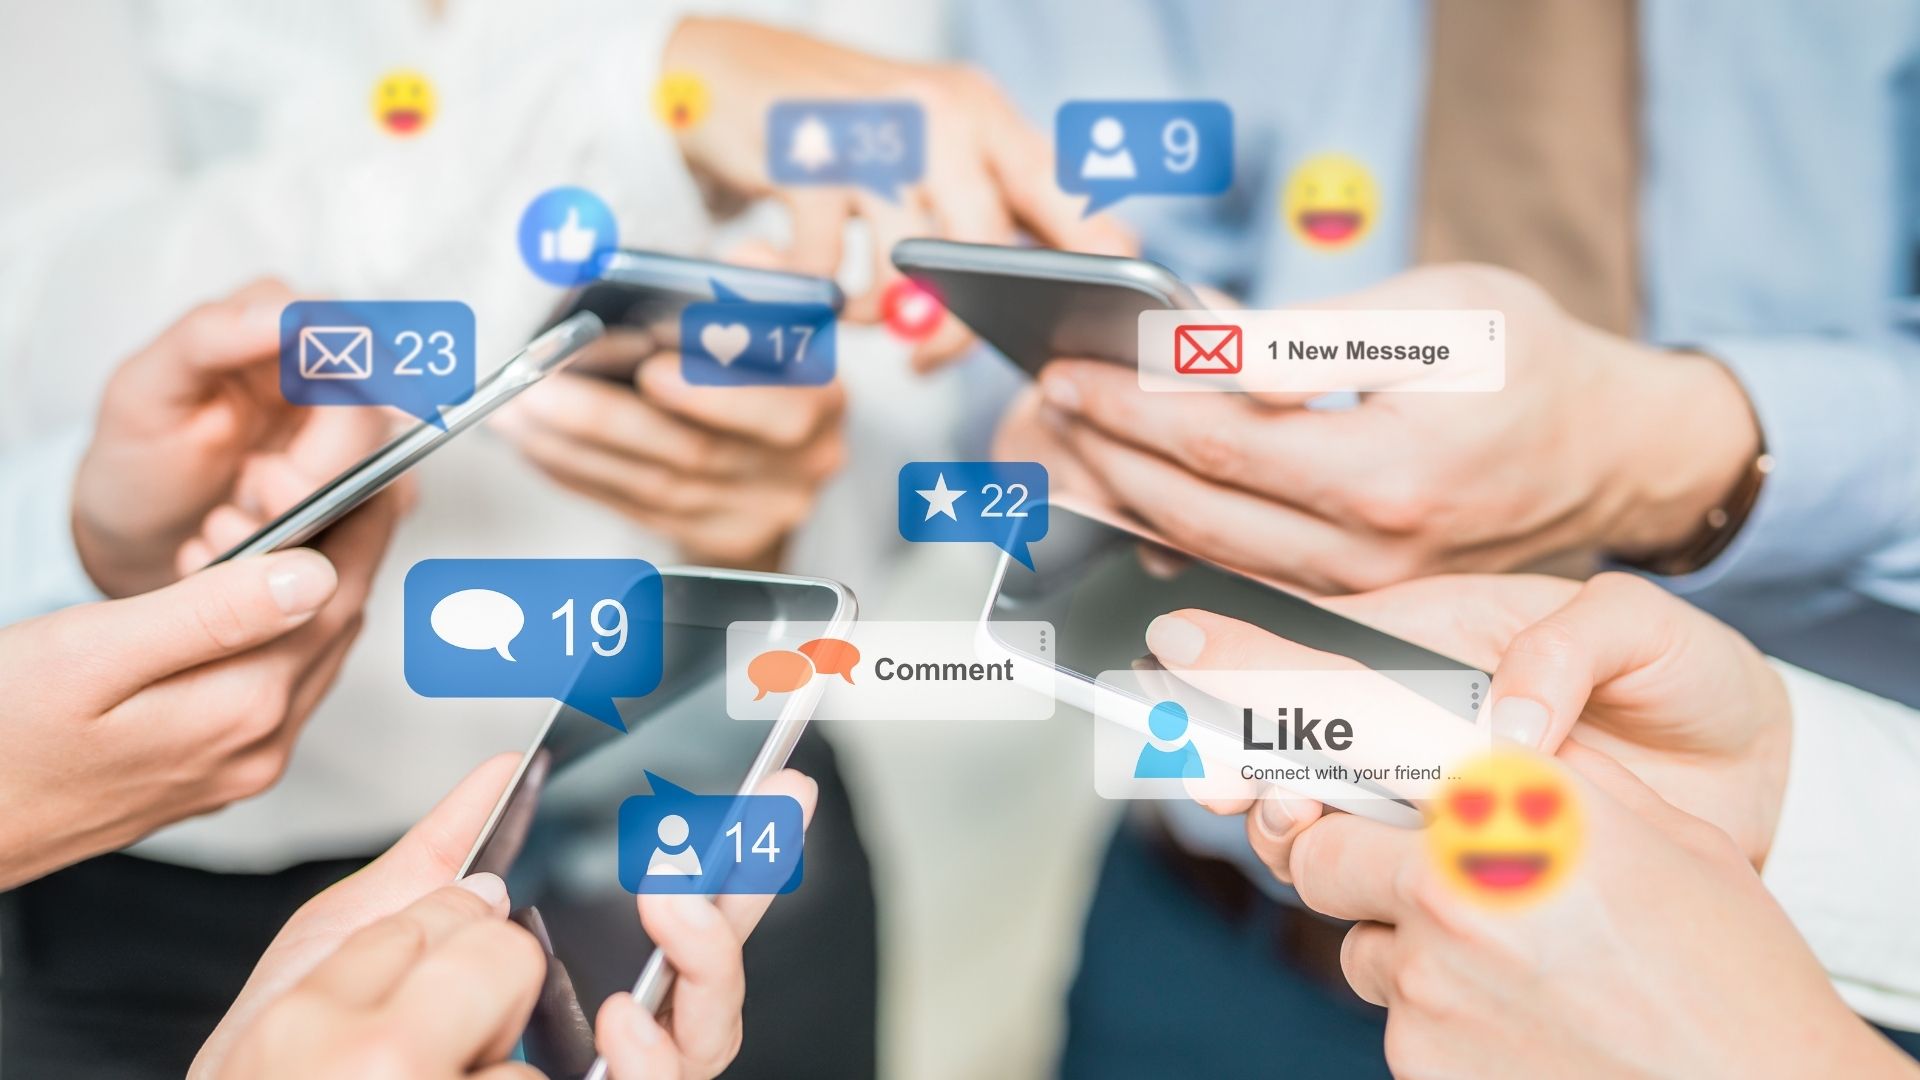 Penggunaan Media Sosial dapat Menurunkan Kinerja Pegawai? Benar atau Salah?